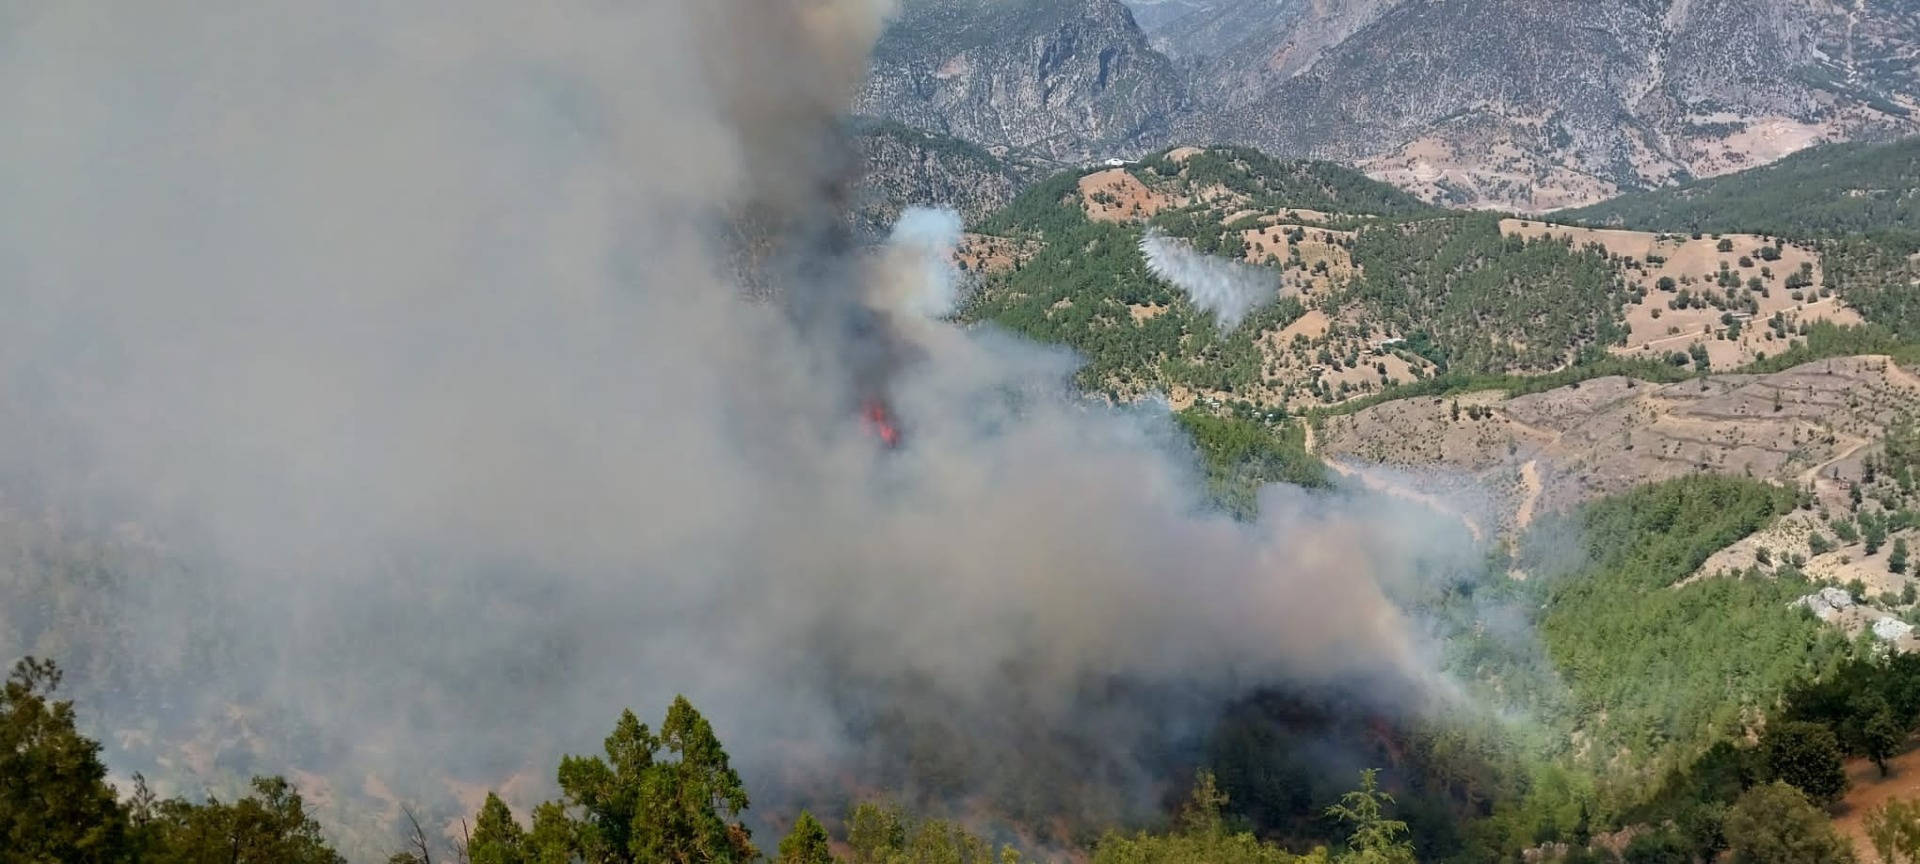 Adana'nın Kozan ilçesinde çıkan orman yangını rüzgarın etkisiyle kısa sürede büyüdü